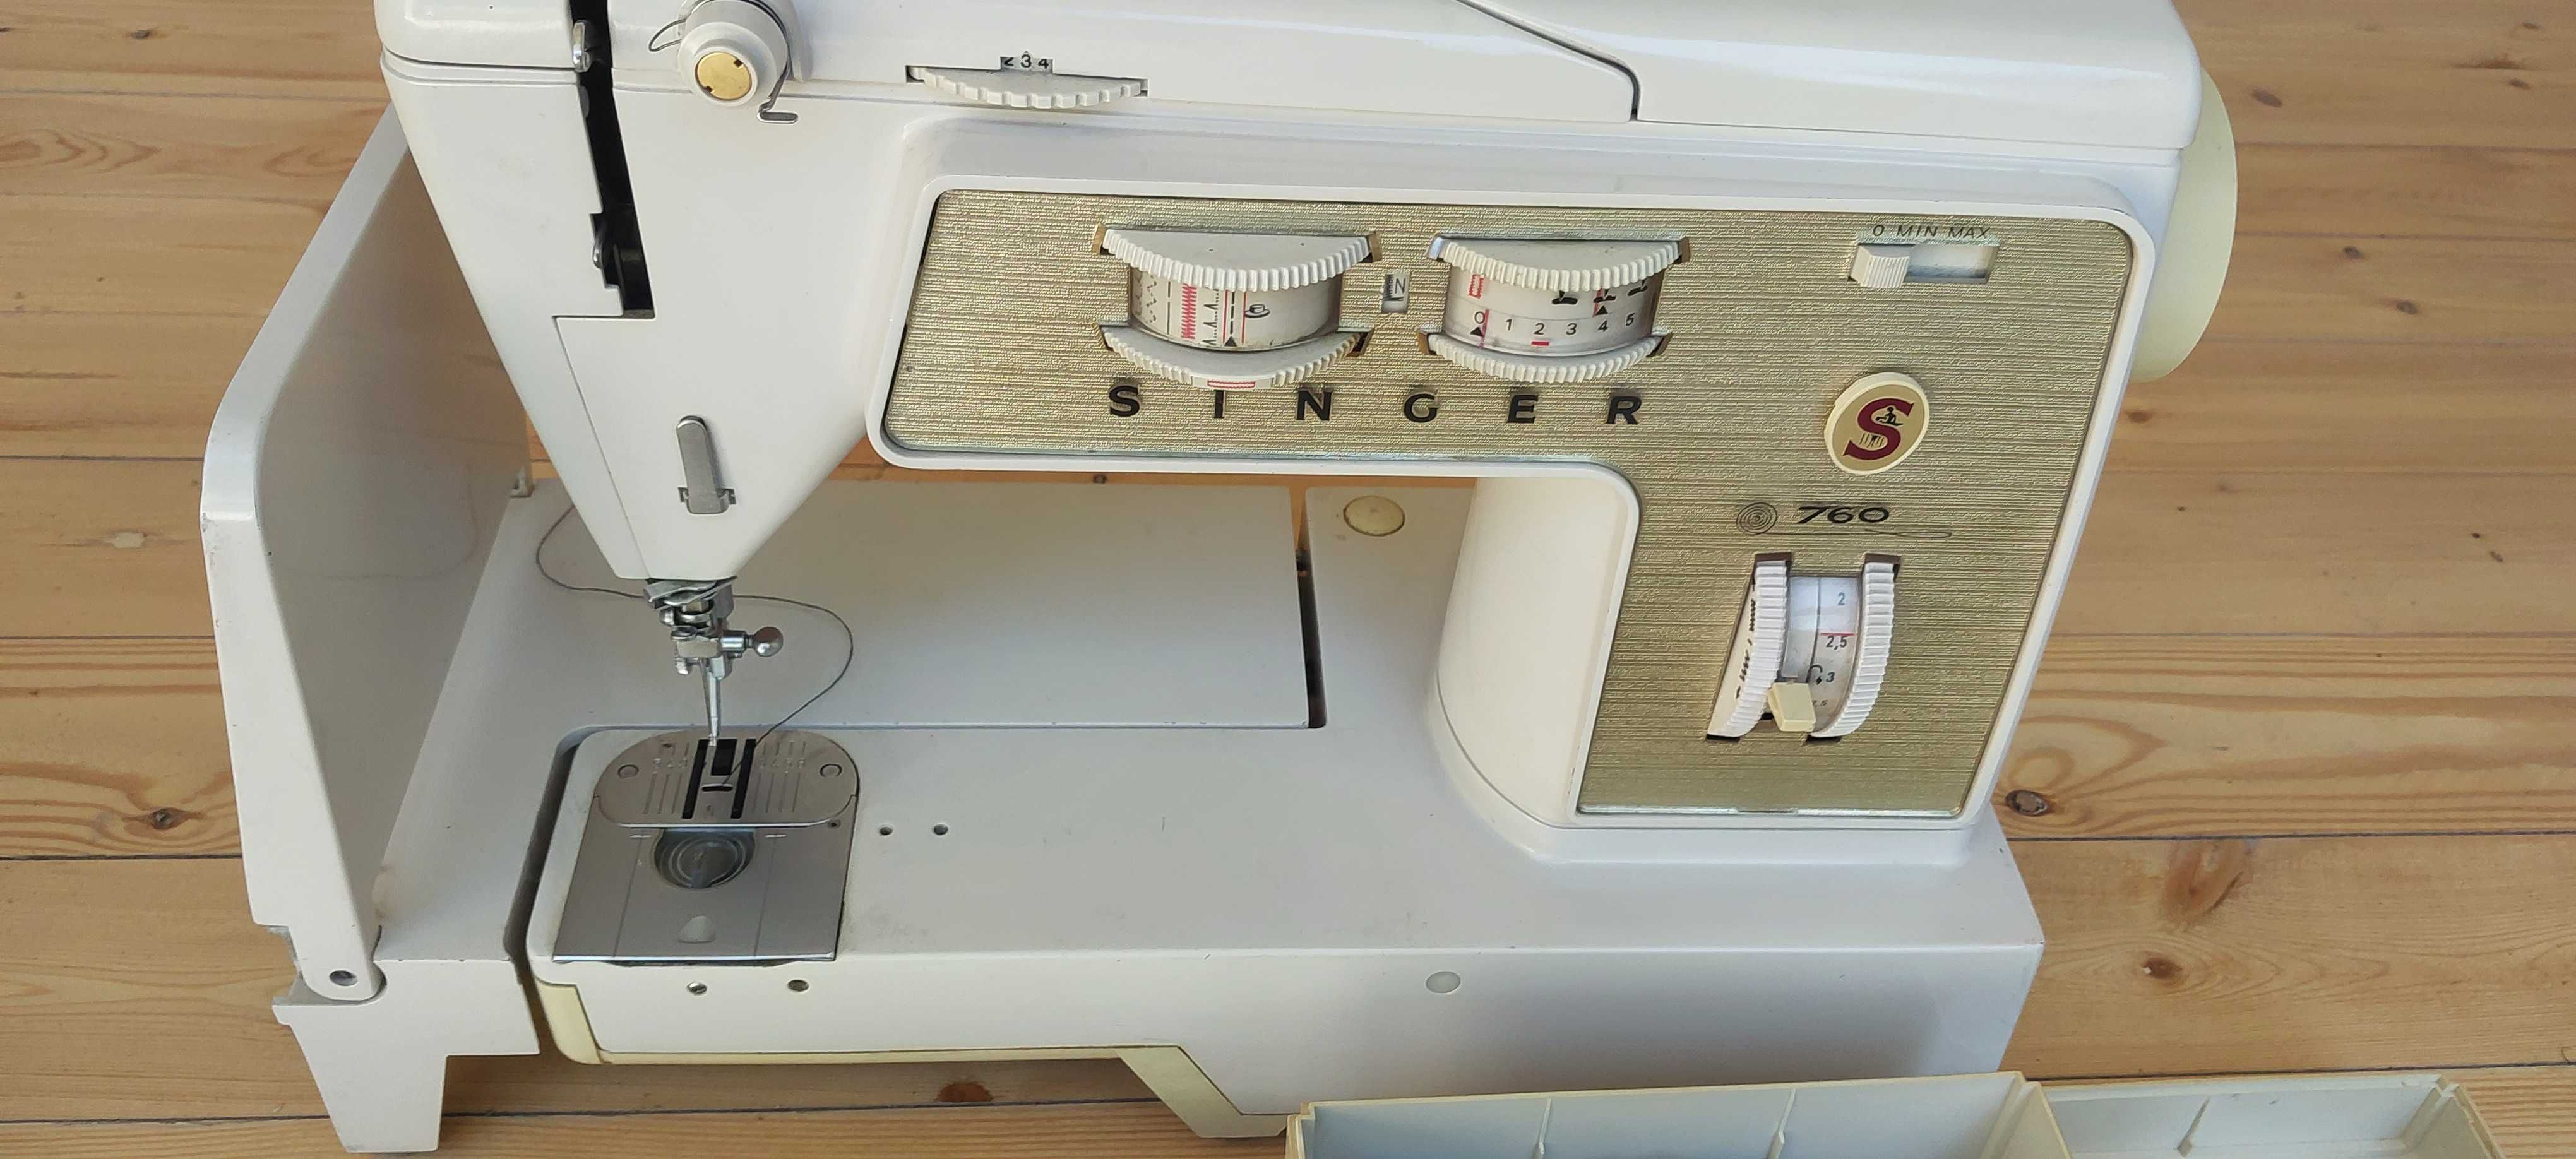 Зингер (singer) 760 швейная машинка